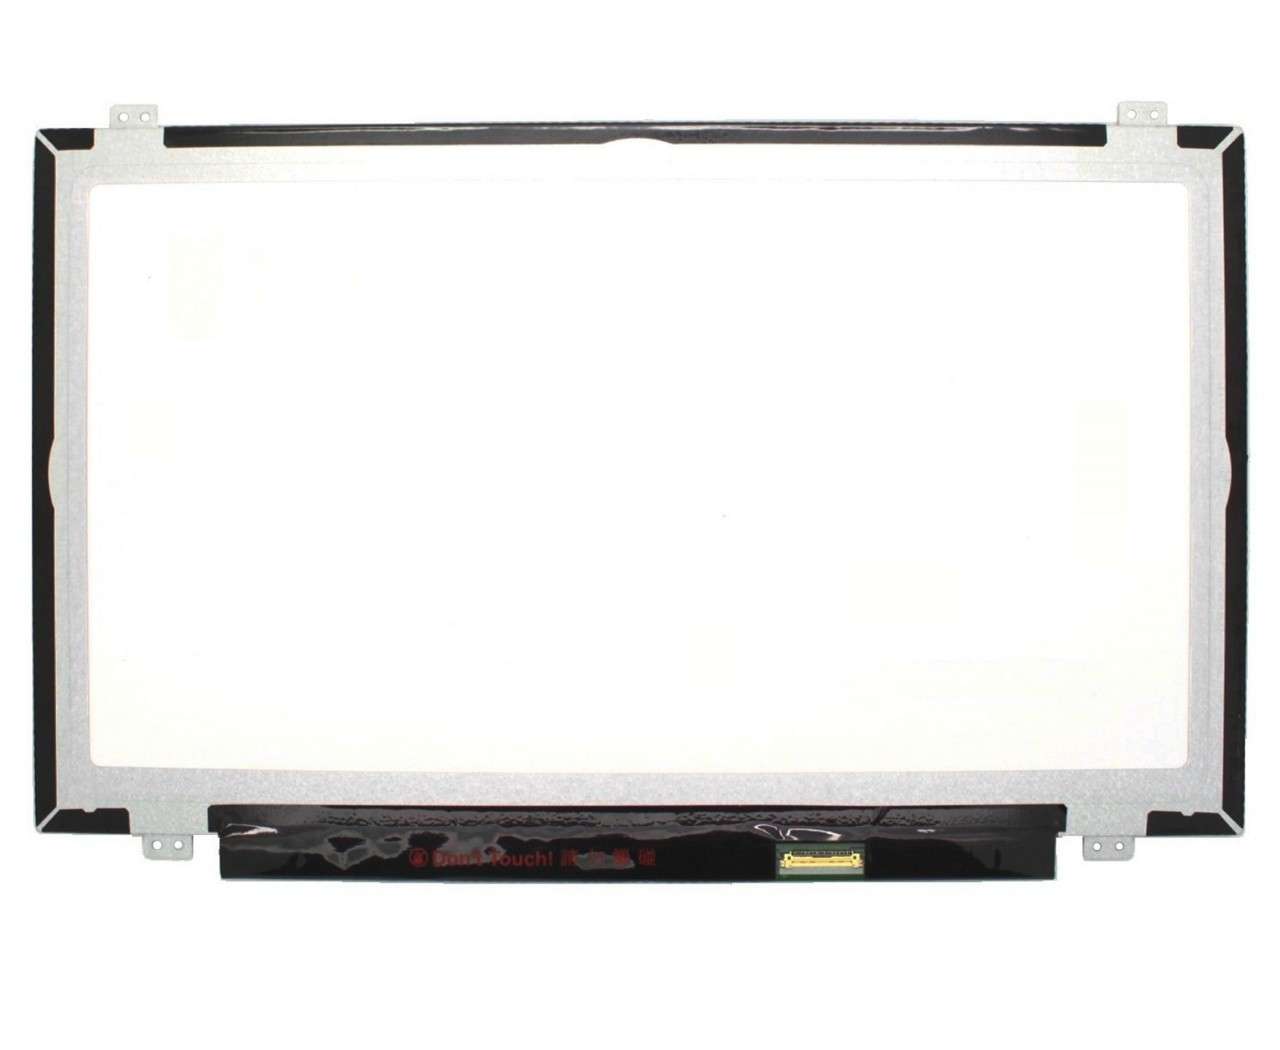 Display laptop LG LP140WF6 SP B1 Ecran 14.0 1920×1080 30 pini eDP imagine 2021 LG